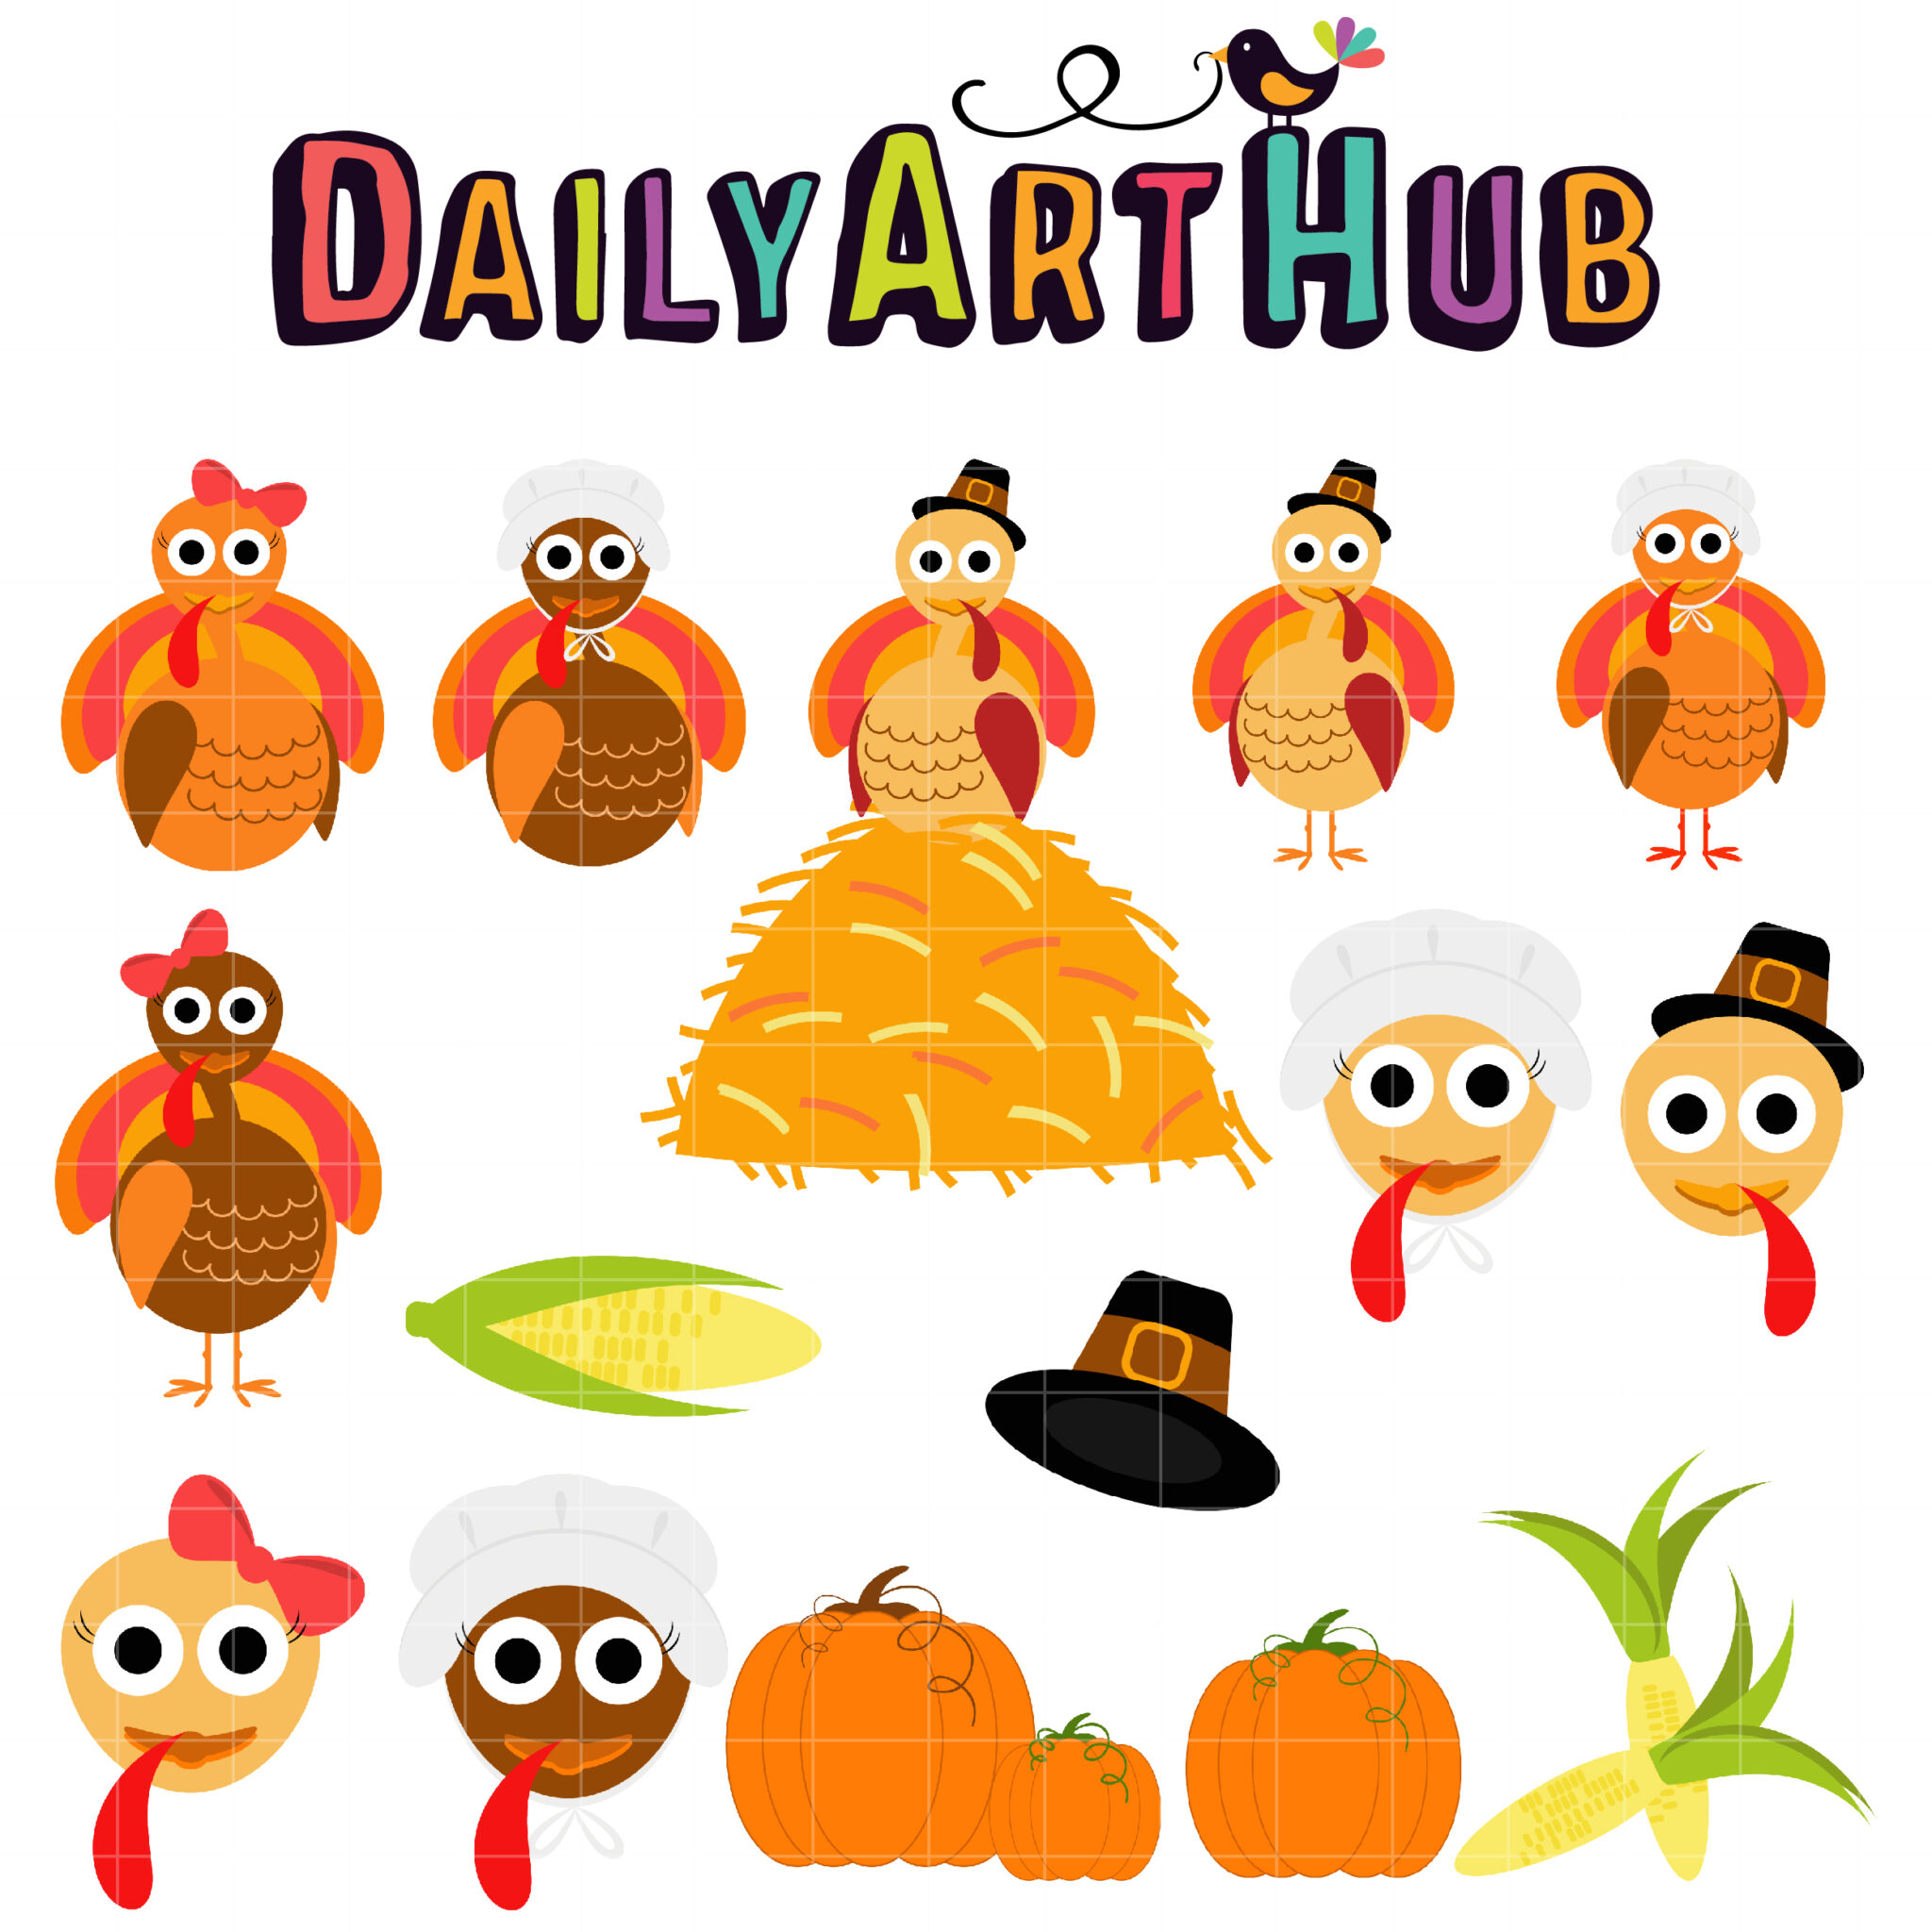 Gobble Gobble Thanksgiving Turkey Clip Art Set Daily Art Hub